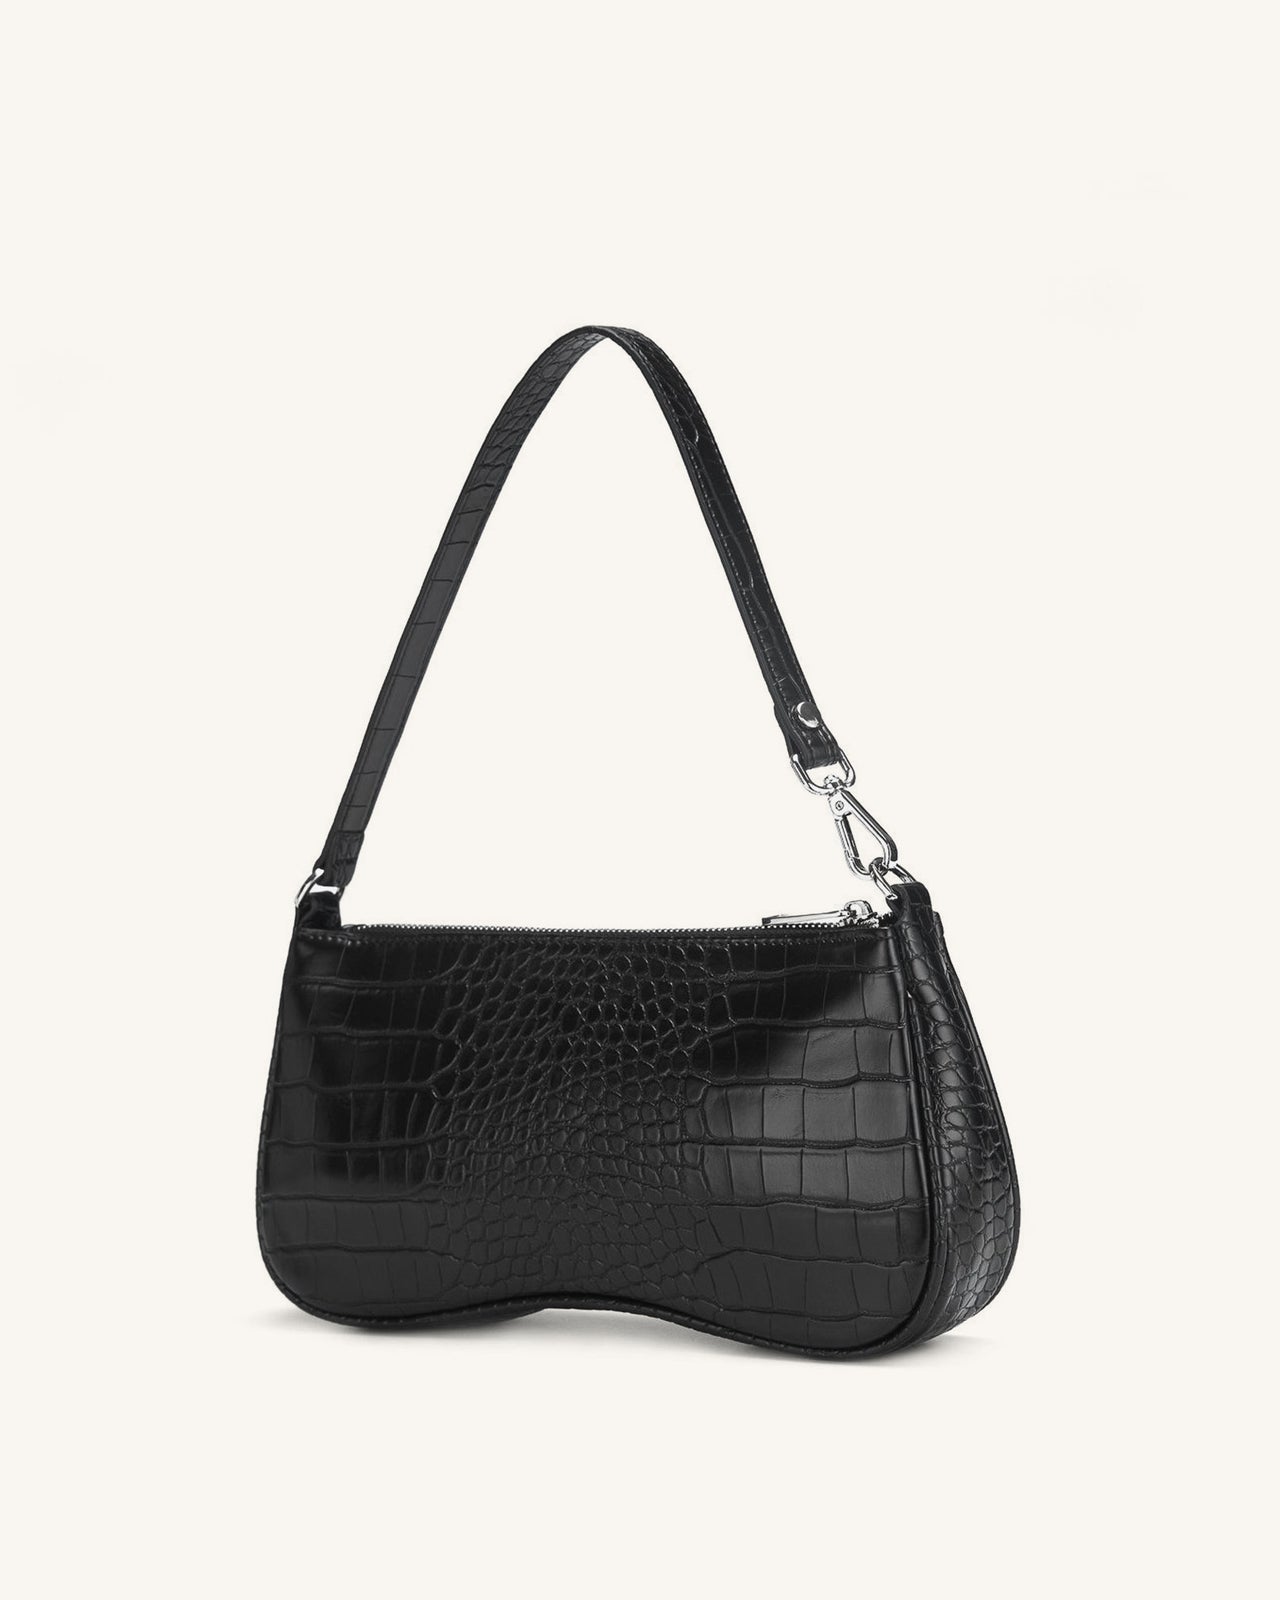 Vegan leather handbag JW PEI Black in Vegan leather - 35395916